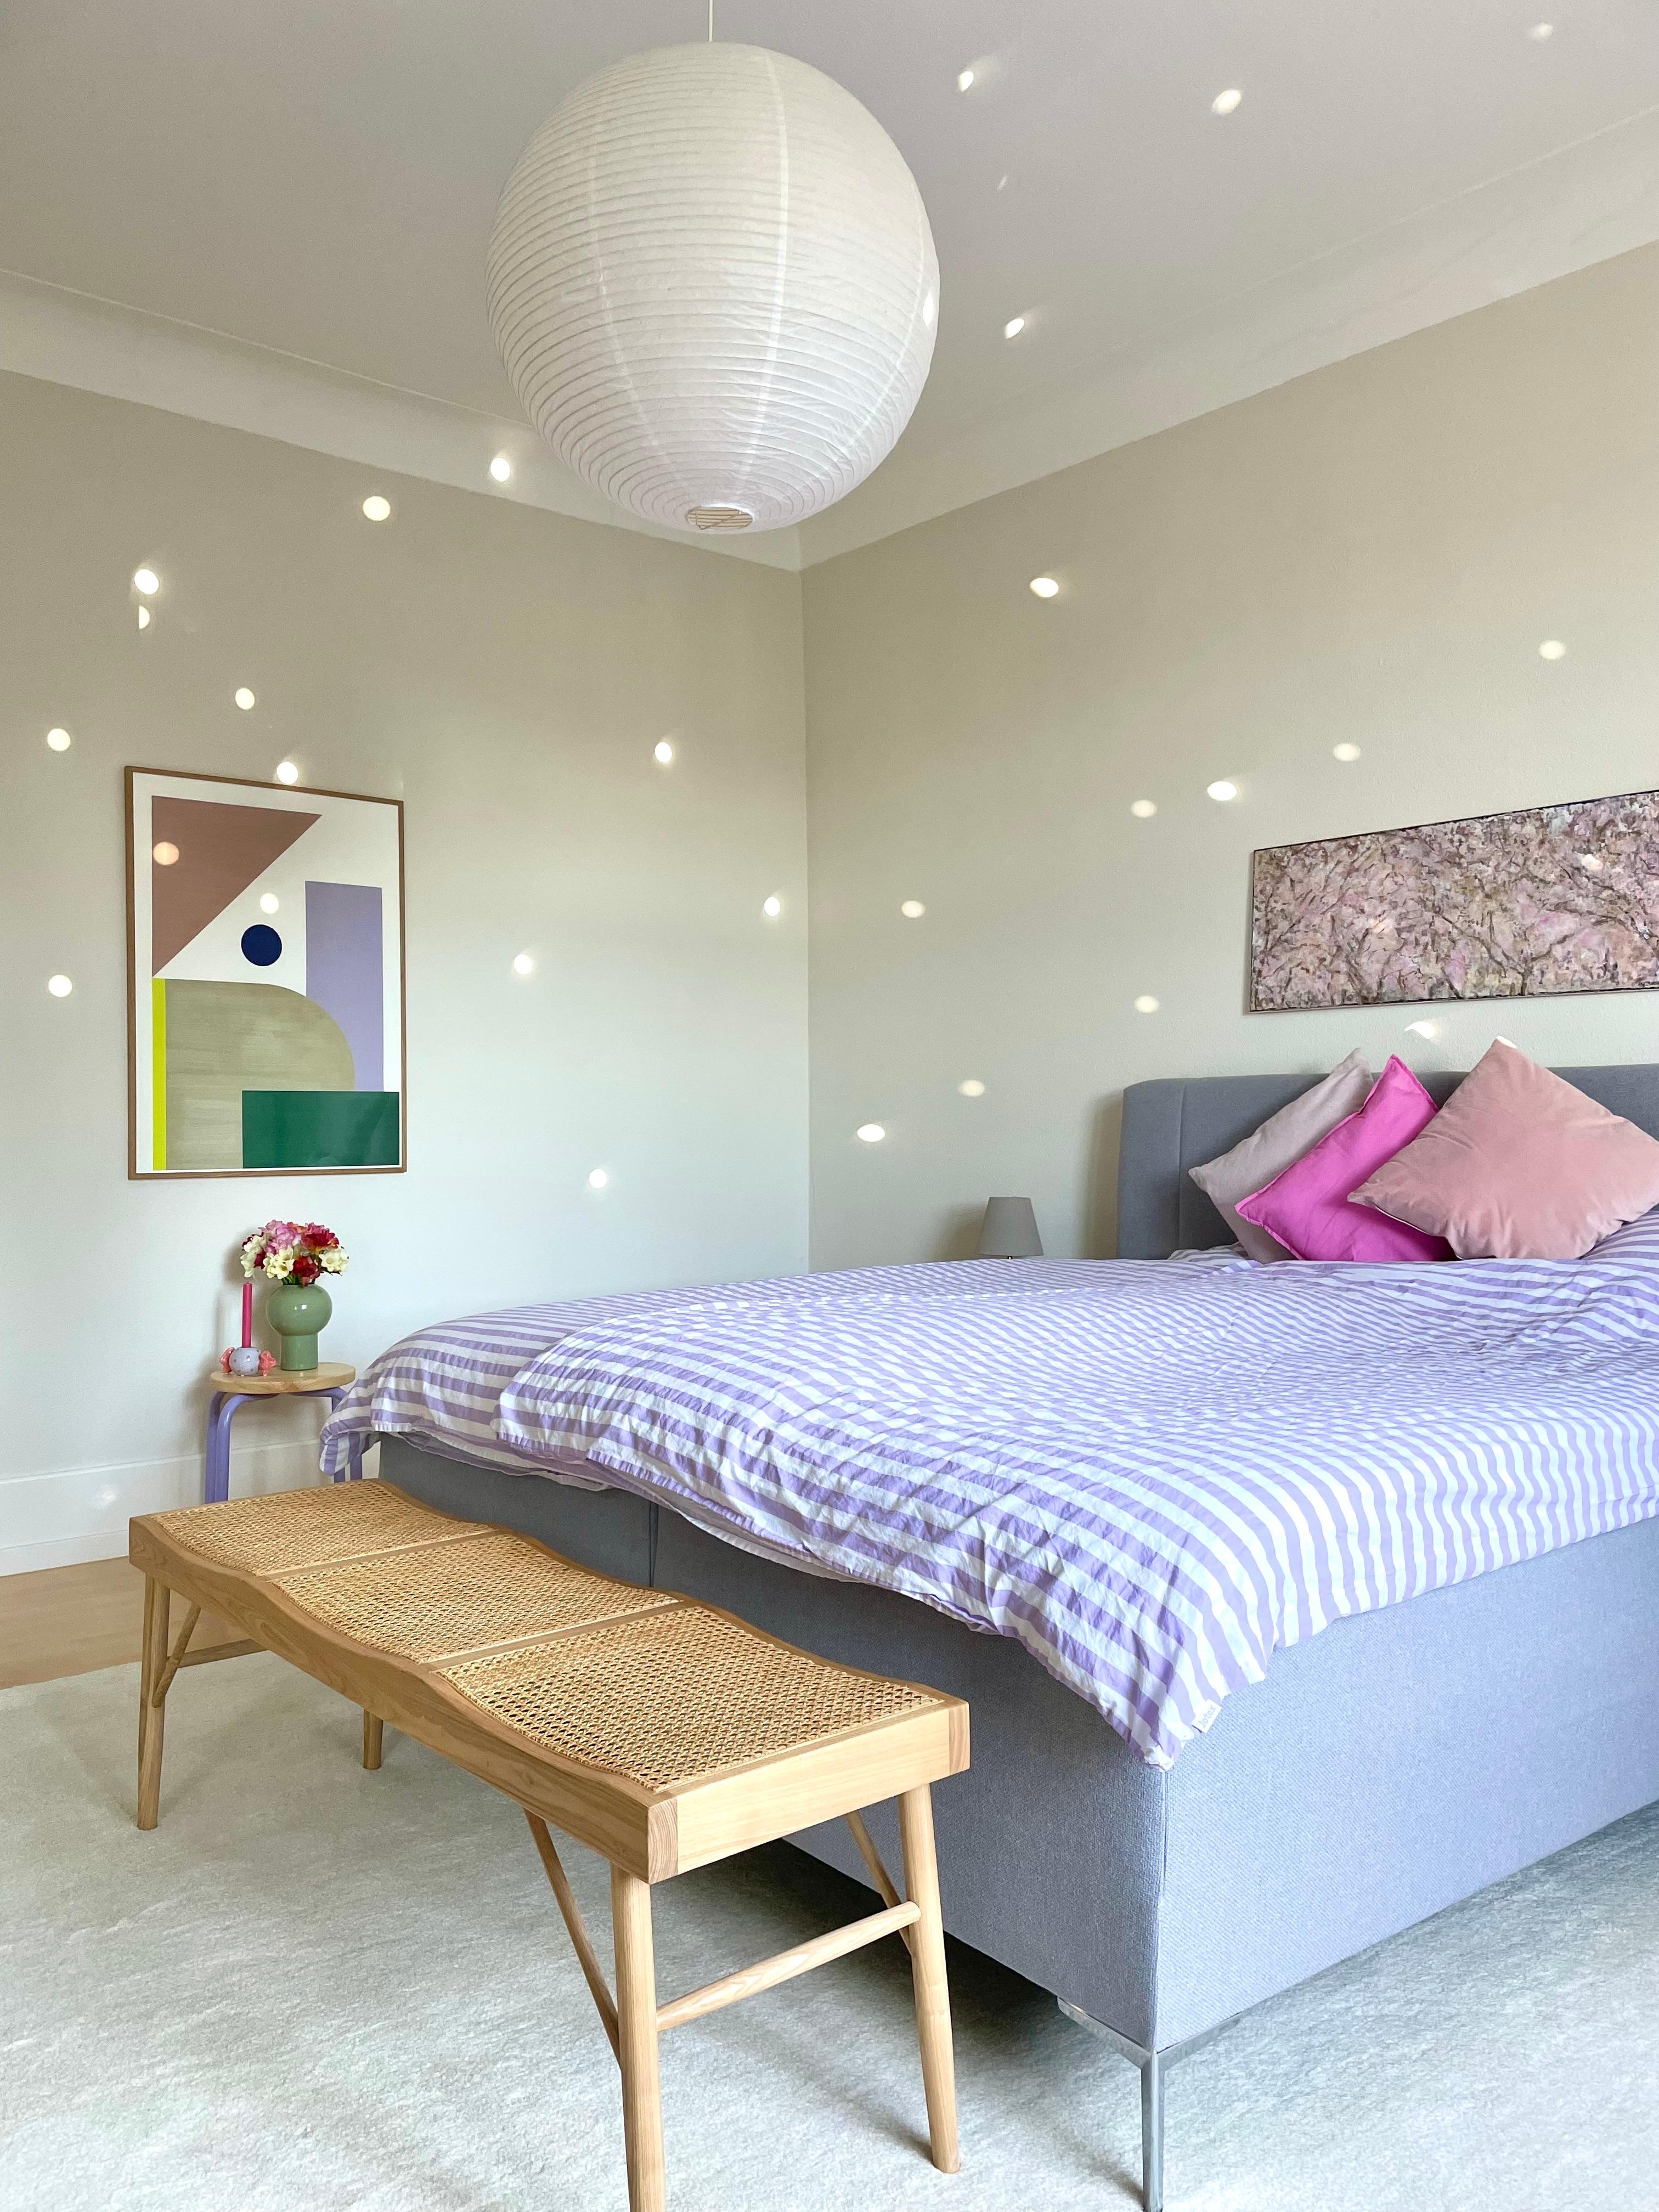 #schlafzimmer #bedroom #kunst #flieder #dopamindekor #farbenfroh #sitzbank #altbau #altbauliebe